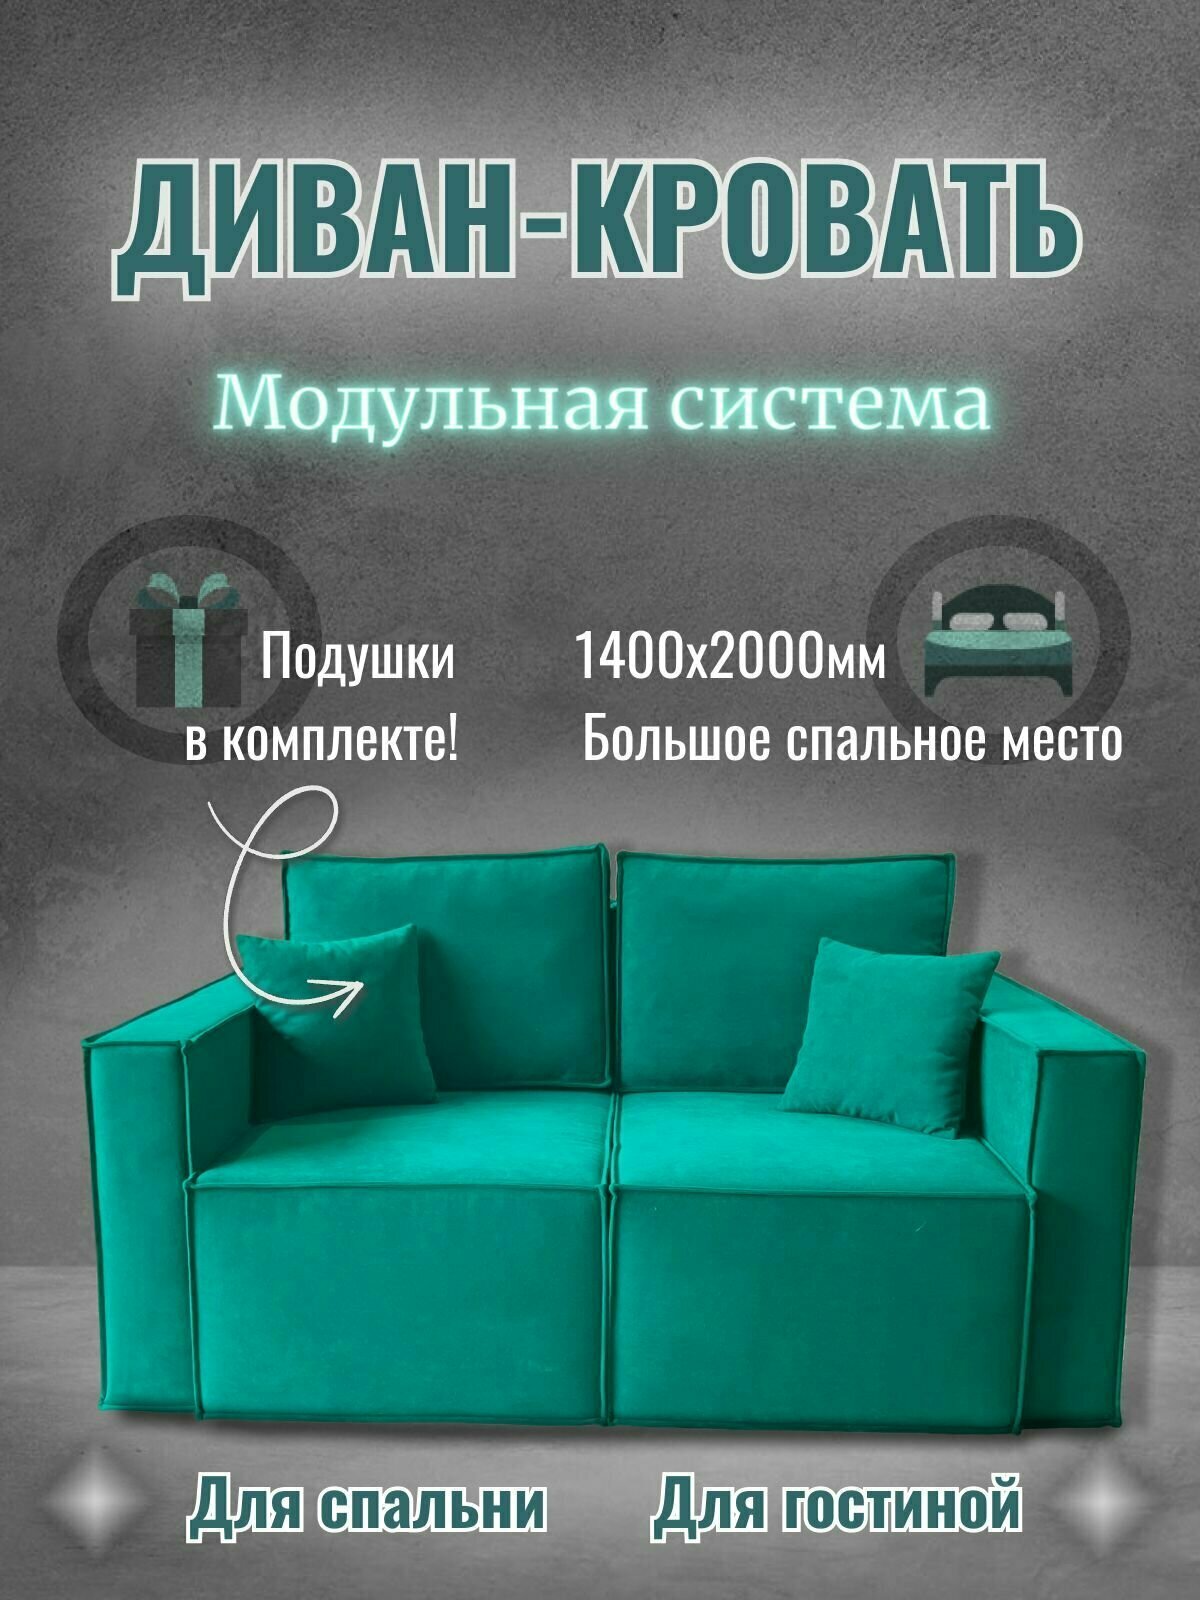 Диван-кровать модульный в спальню LEO, выкатанной механизм — купить винтернет-магазине по низкой цене на Яндекс Маркете